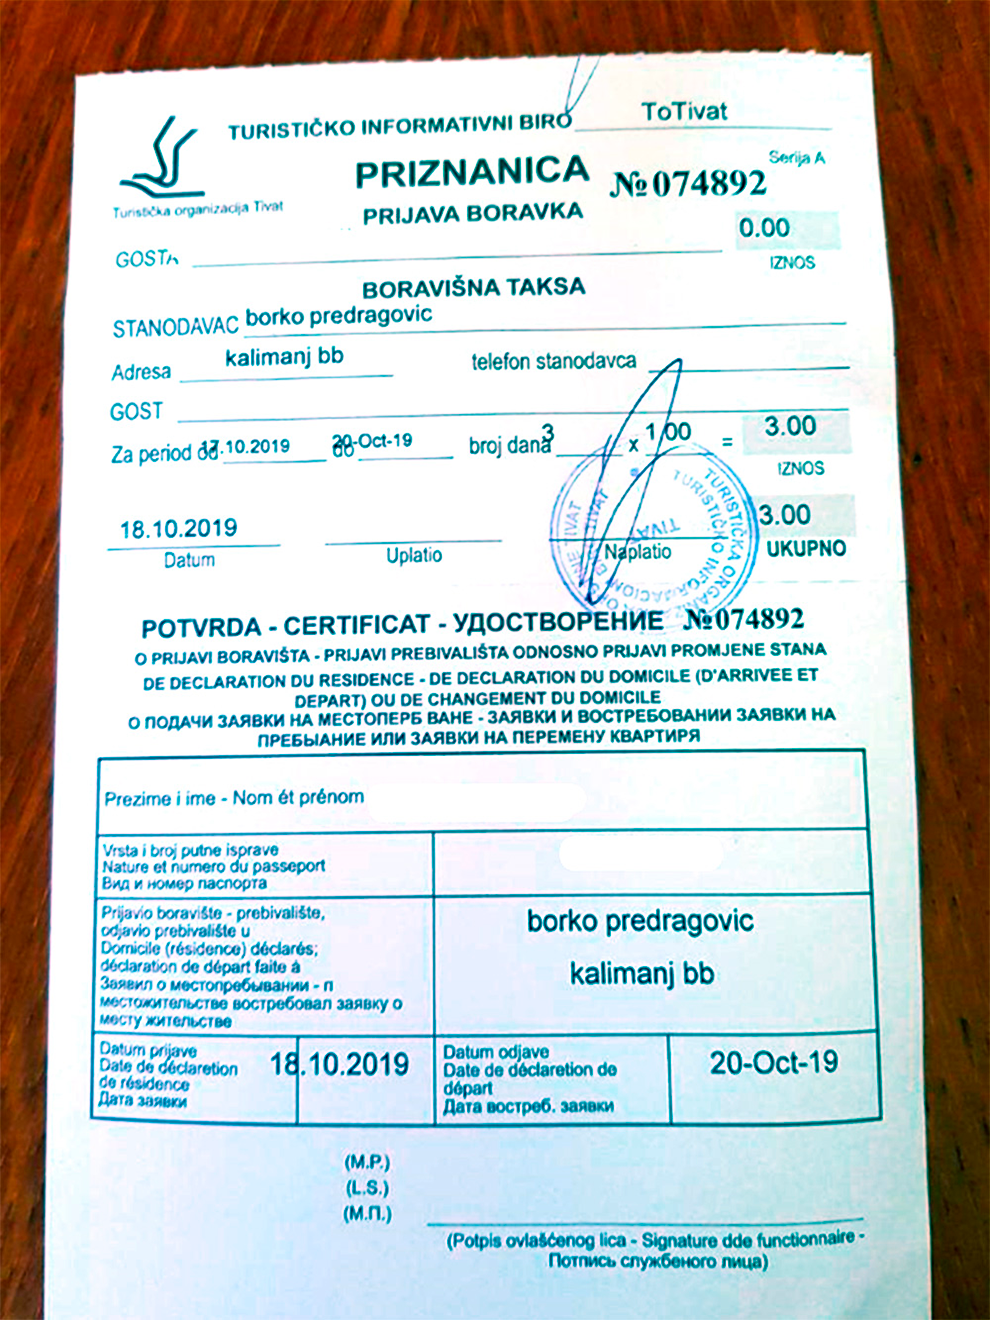 В Тивате в 2019 году выдавали такие удостоверения туриста — с паспортными данными. В других городах могут дать обычный кассовый чек